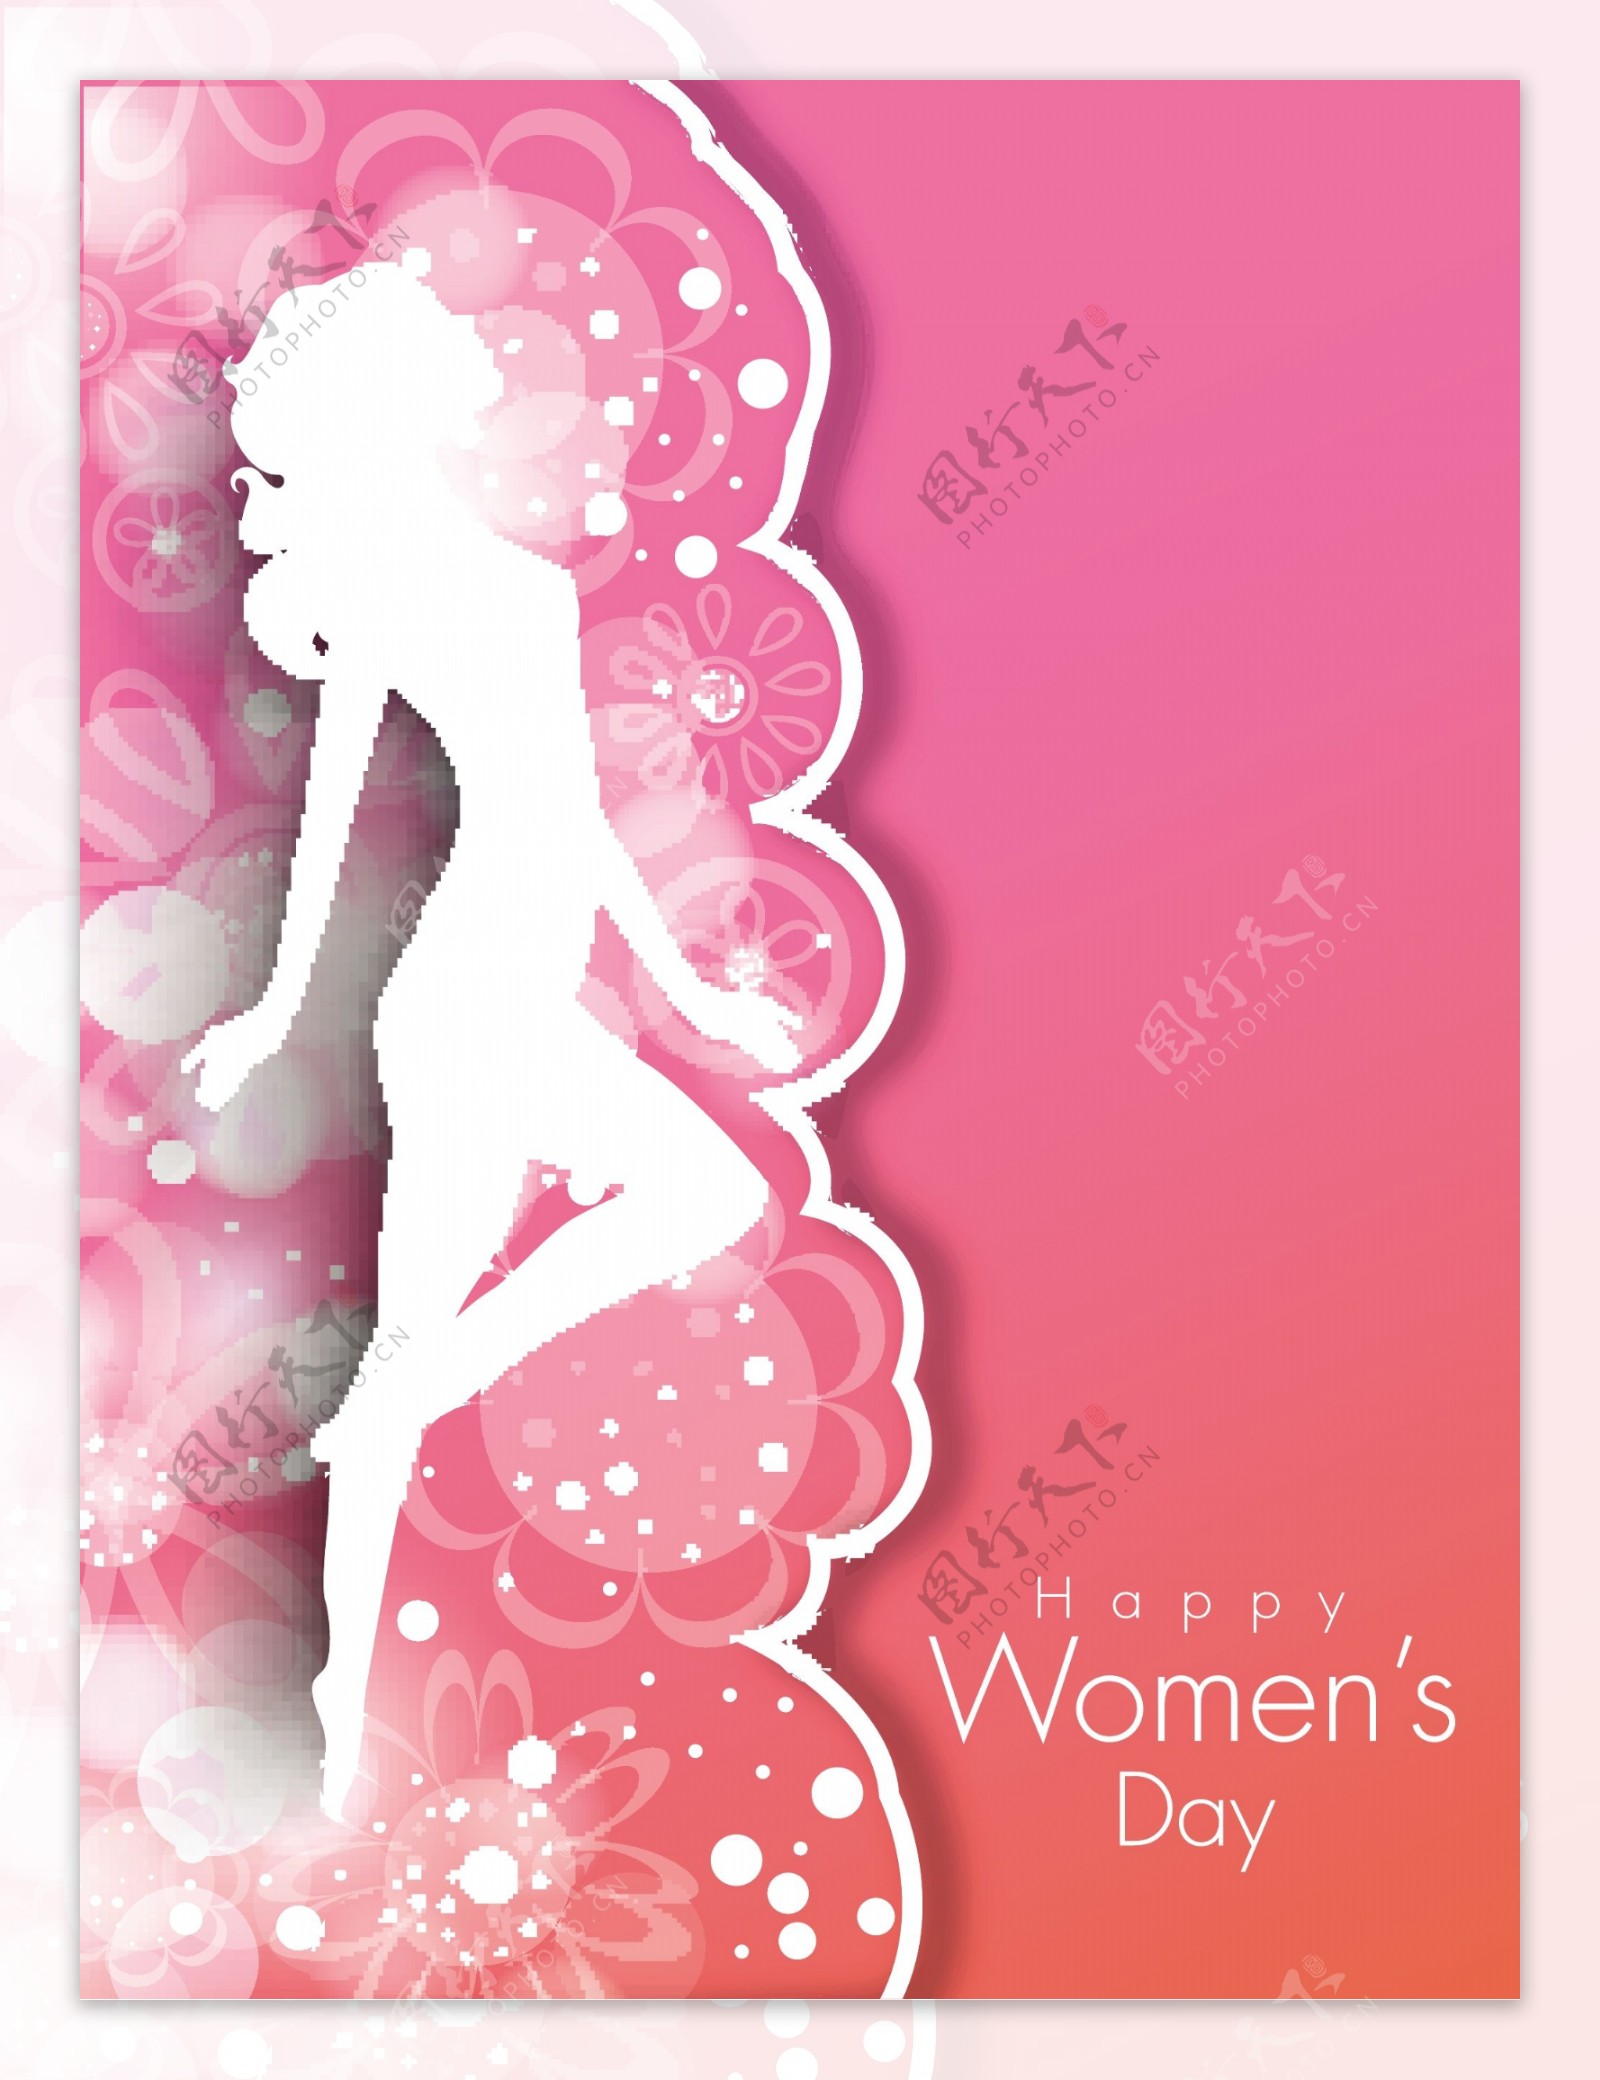 三八妇女节贺卡或海报的粉红色背景一个年轻女孩白色的轮廓设计